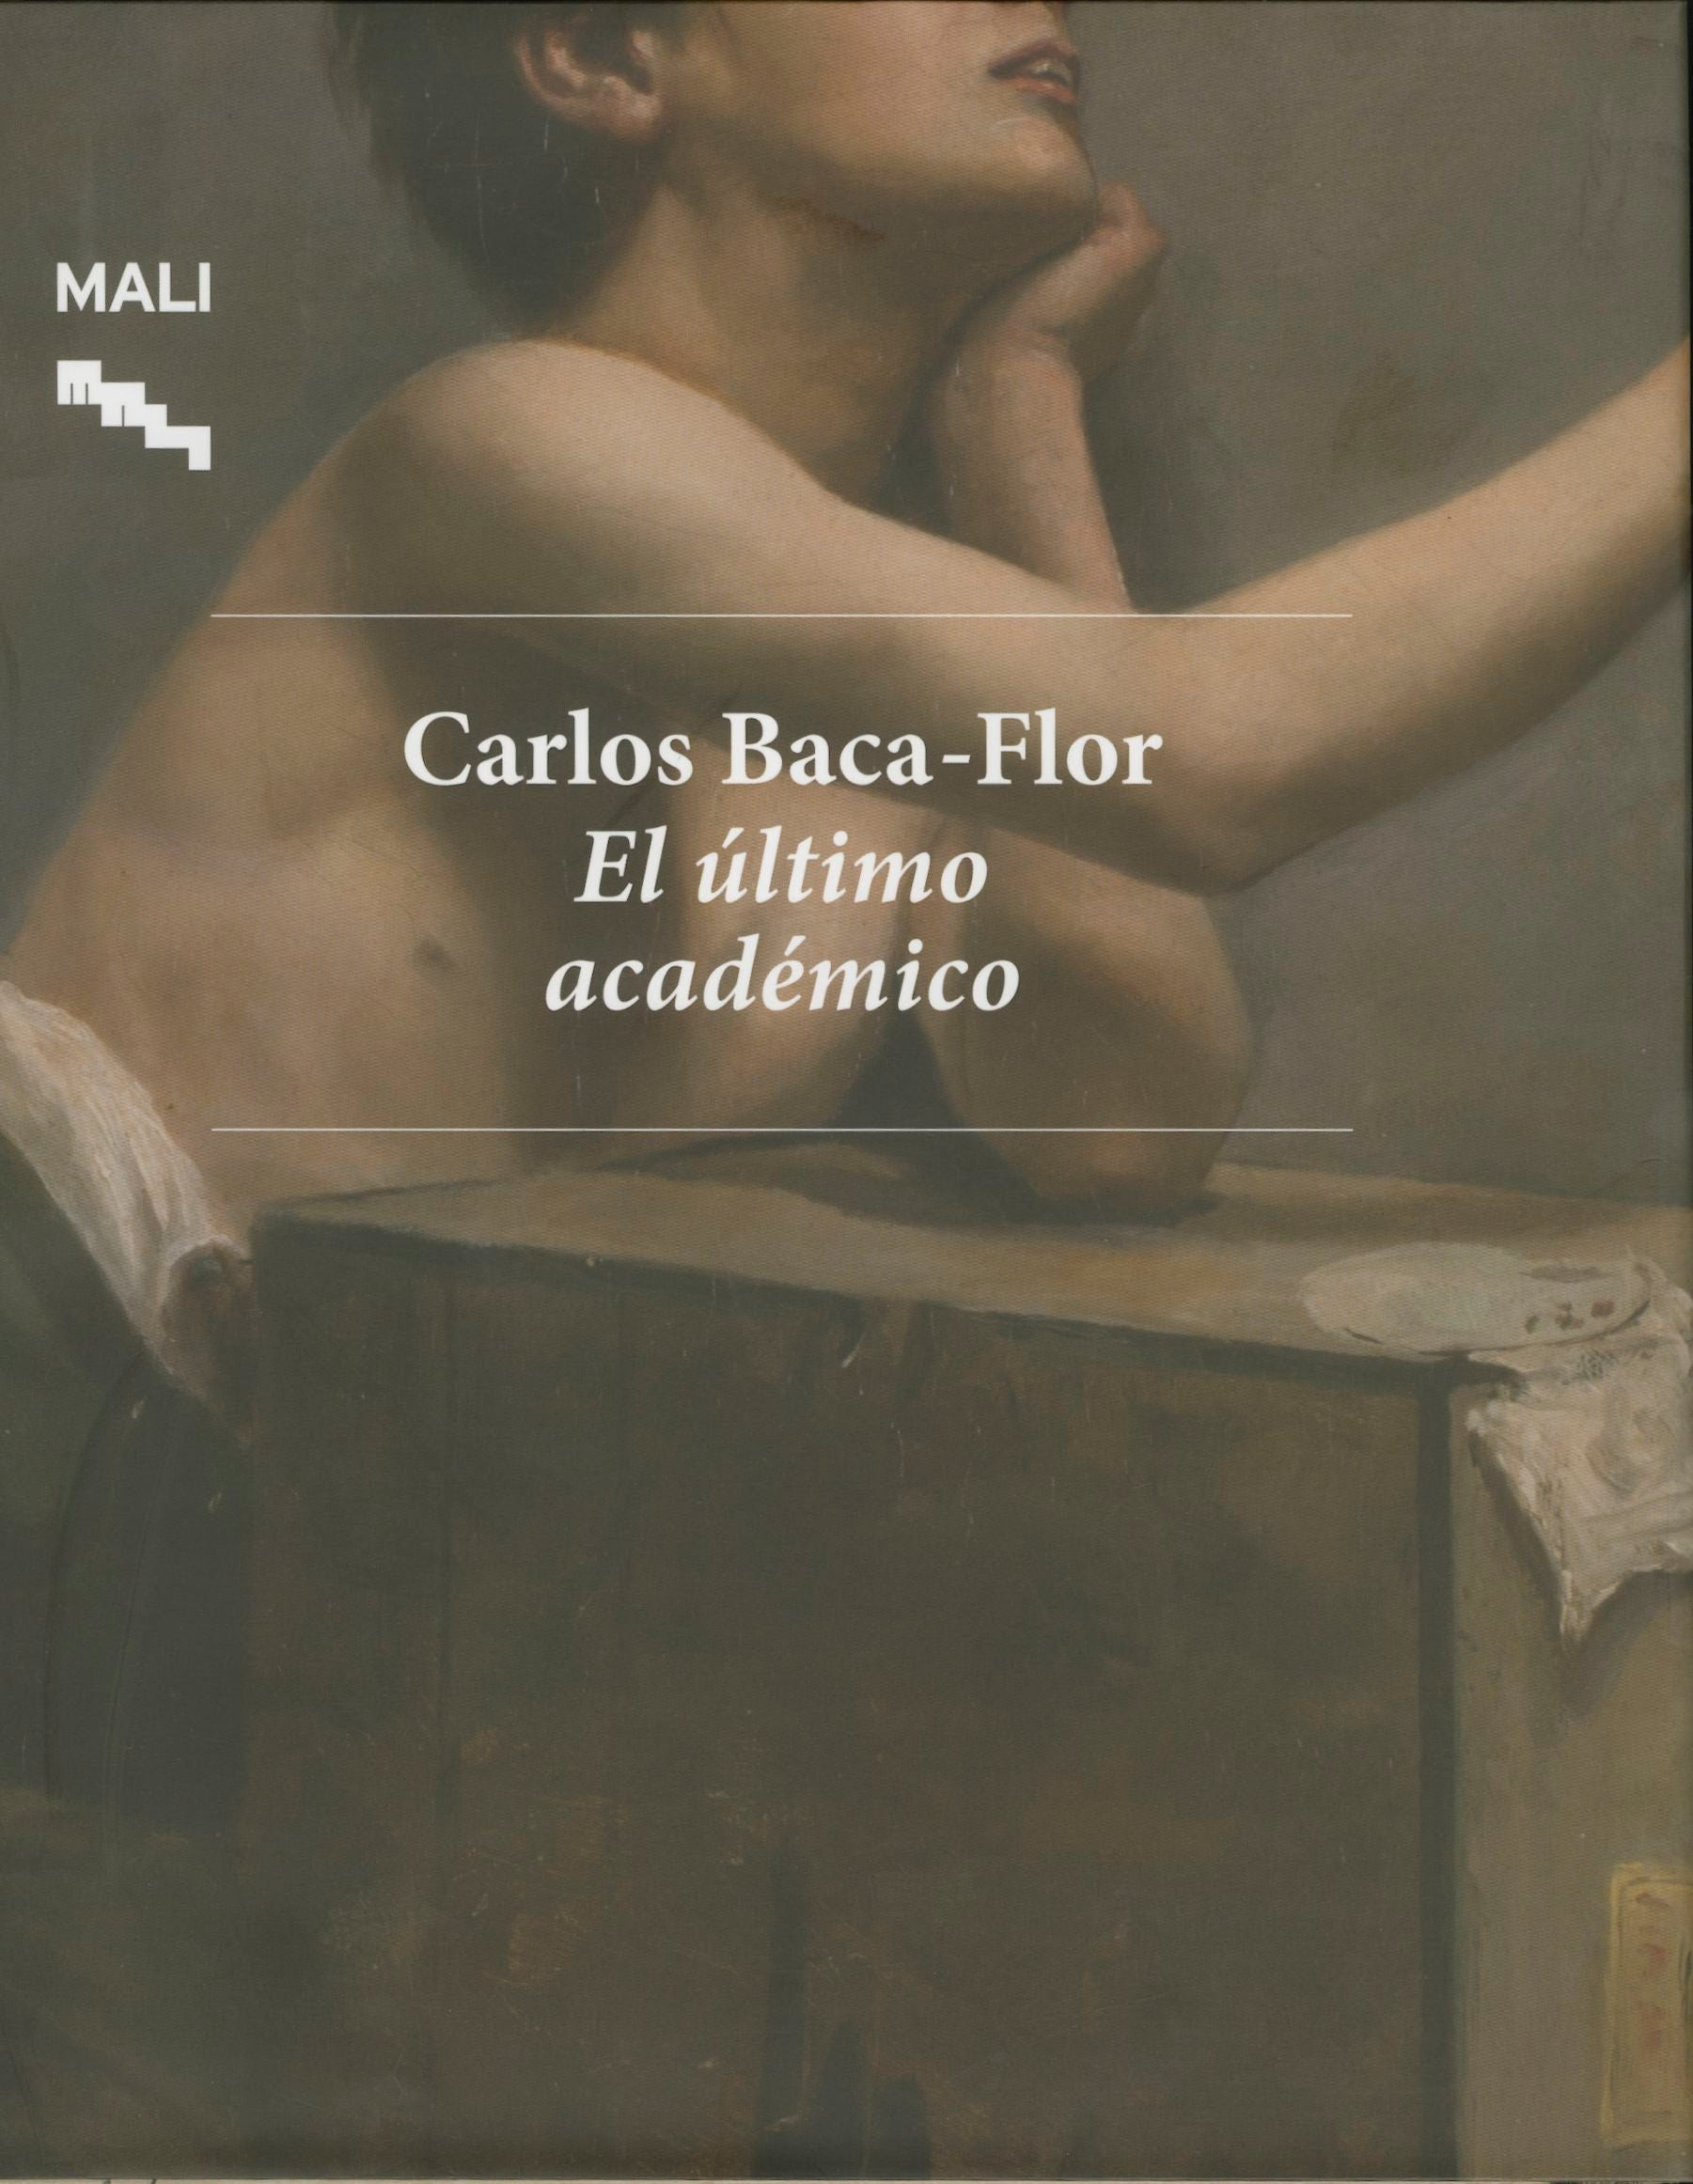 Carlos Baca-Flor. El último académico.